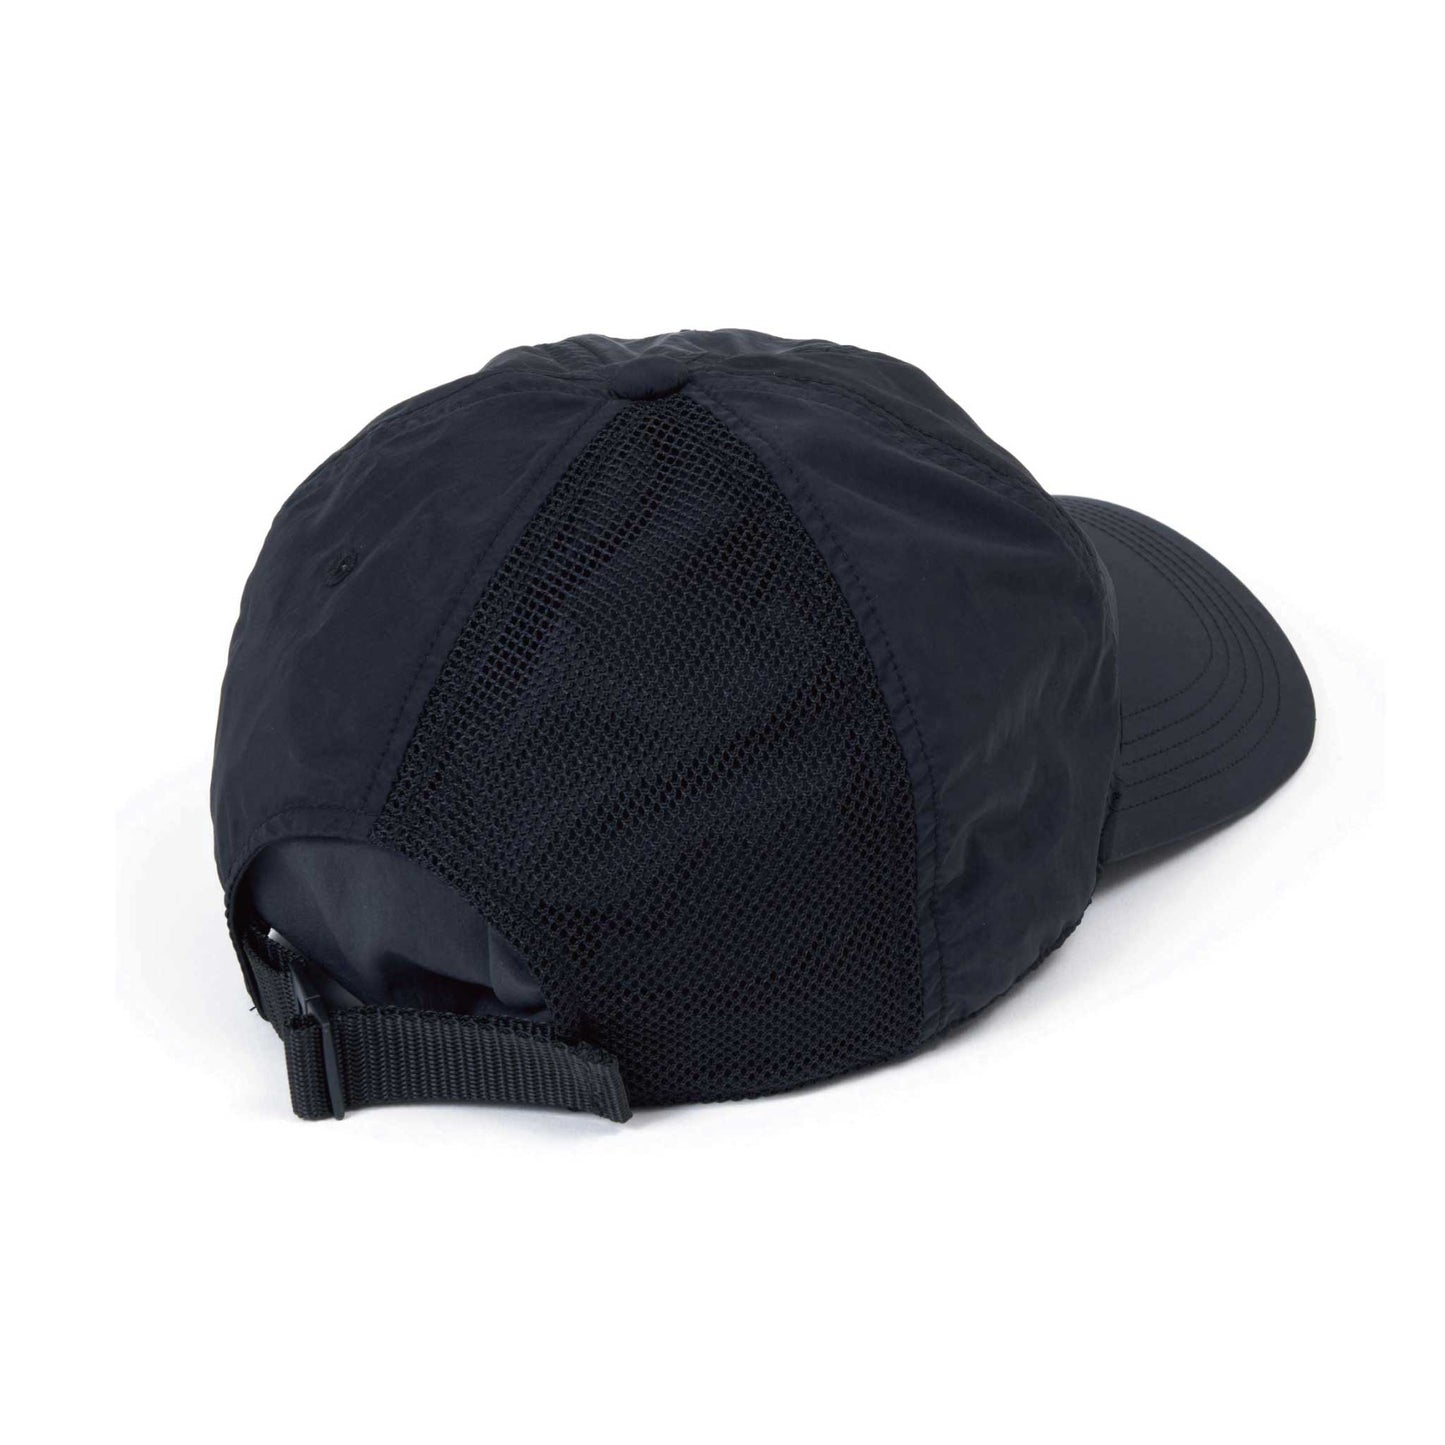 RE:CAP「5+1」color:BLACK/ブラック